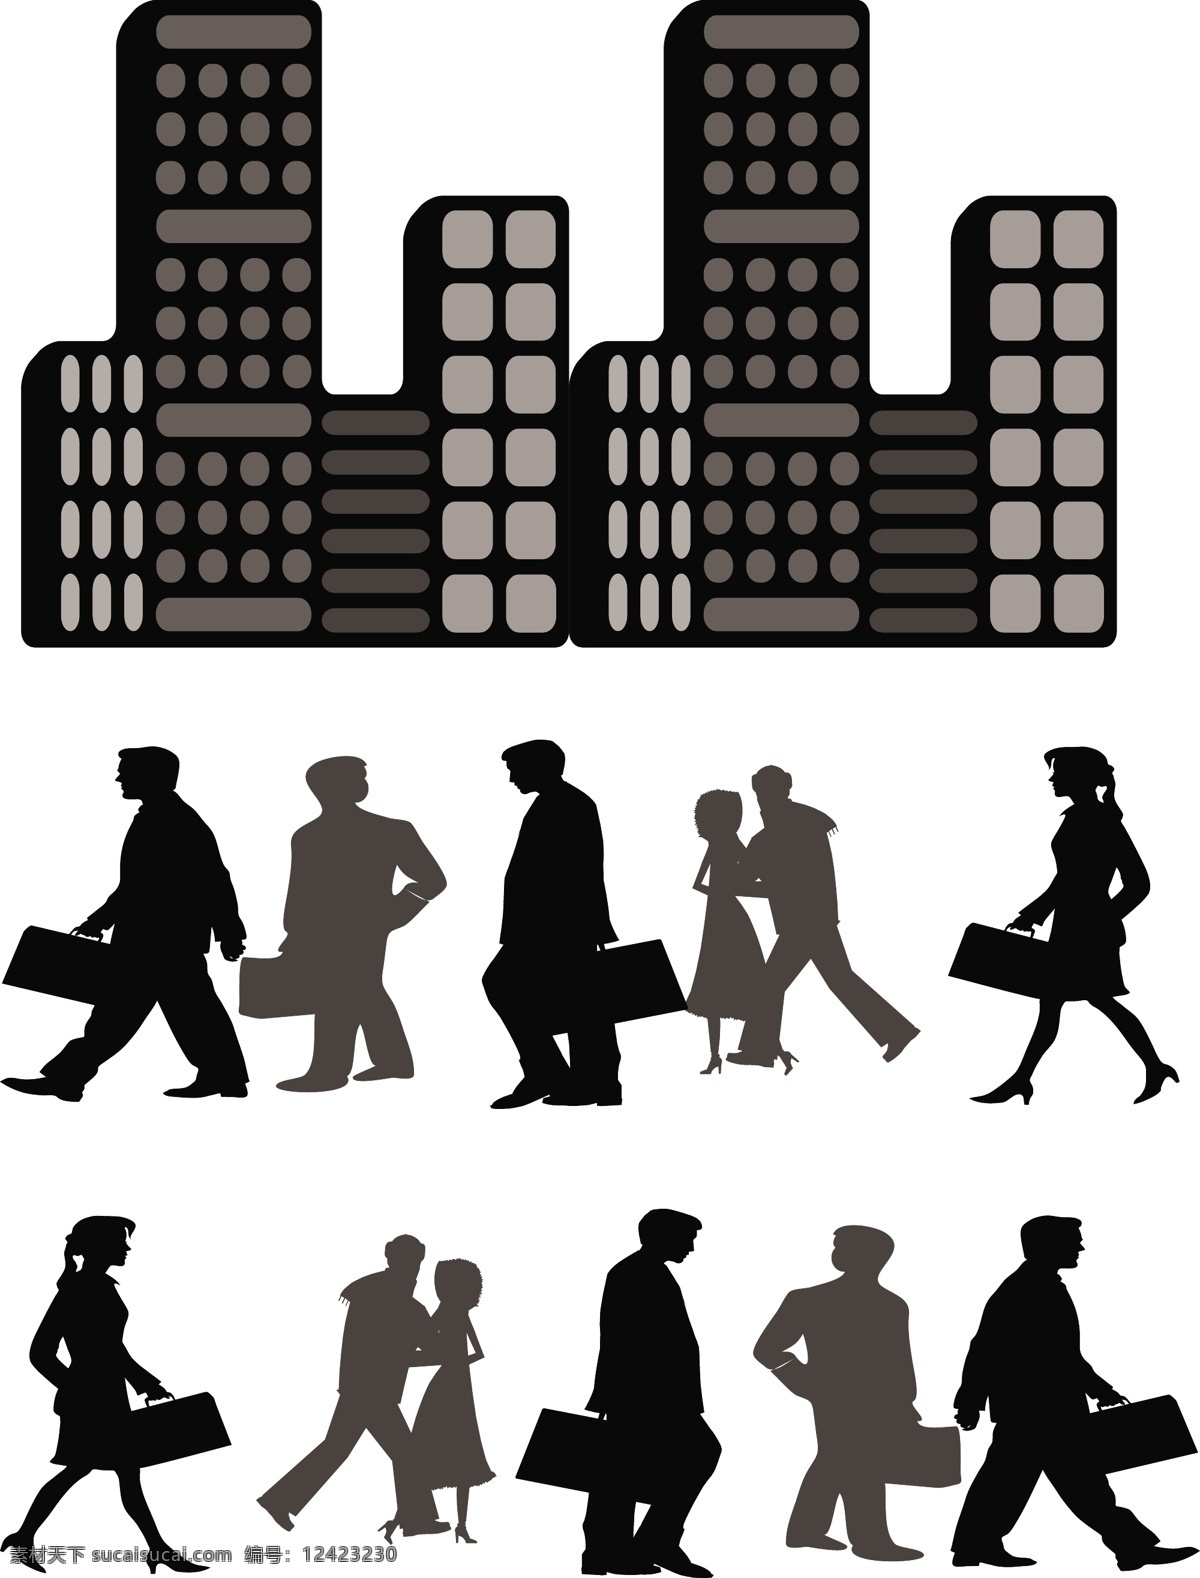 城市剪影素材 城市素材 城市剪影 图标元素 平面设计 高楼 人物剪影